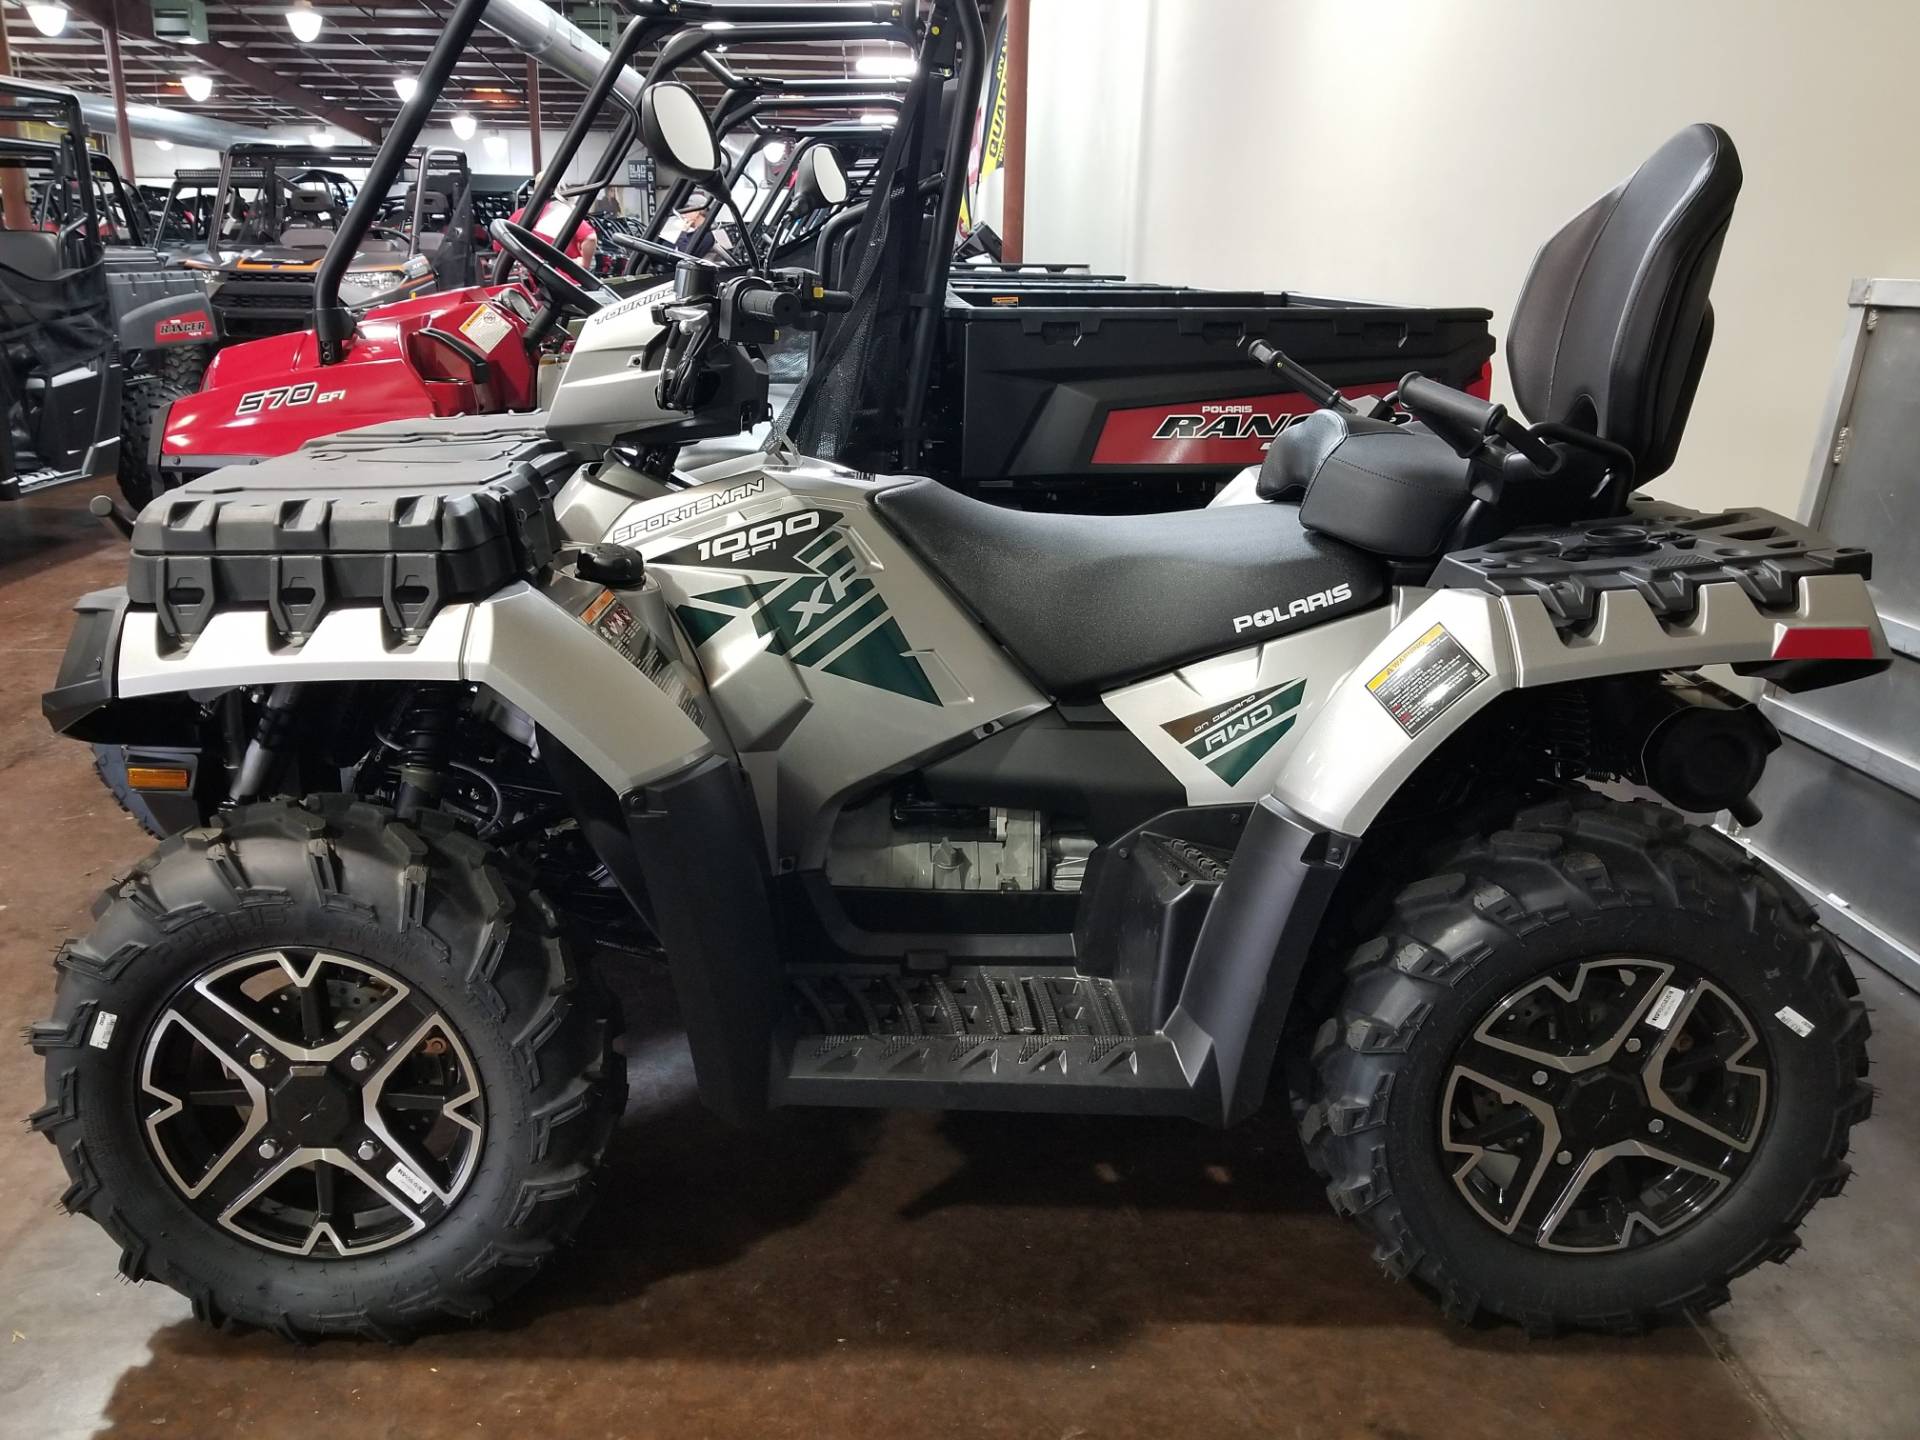 New 2018 Polaris Sportsman Touring XP 1000 ATVs in Statesville, NC ...